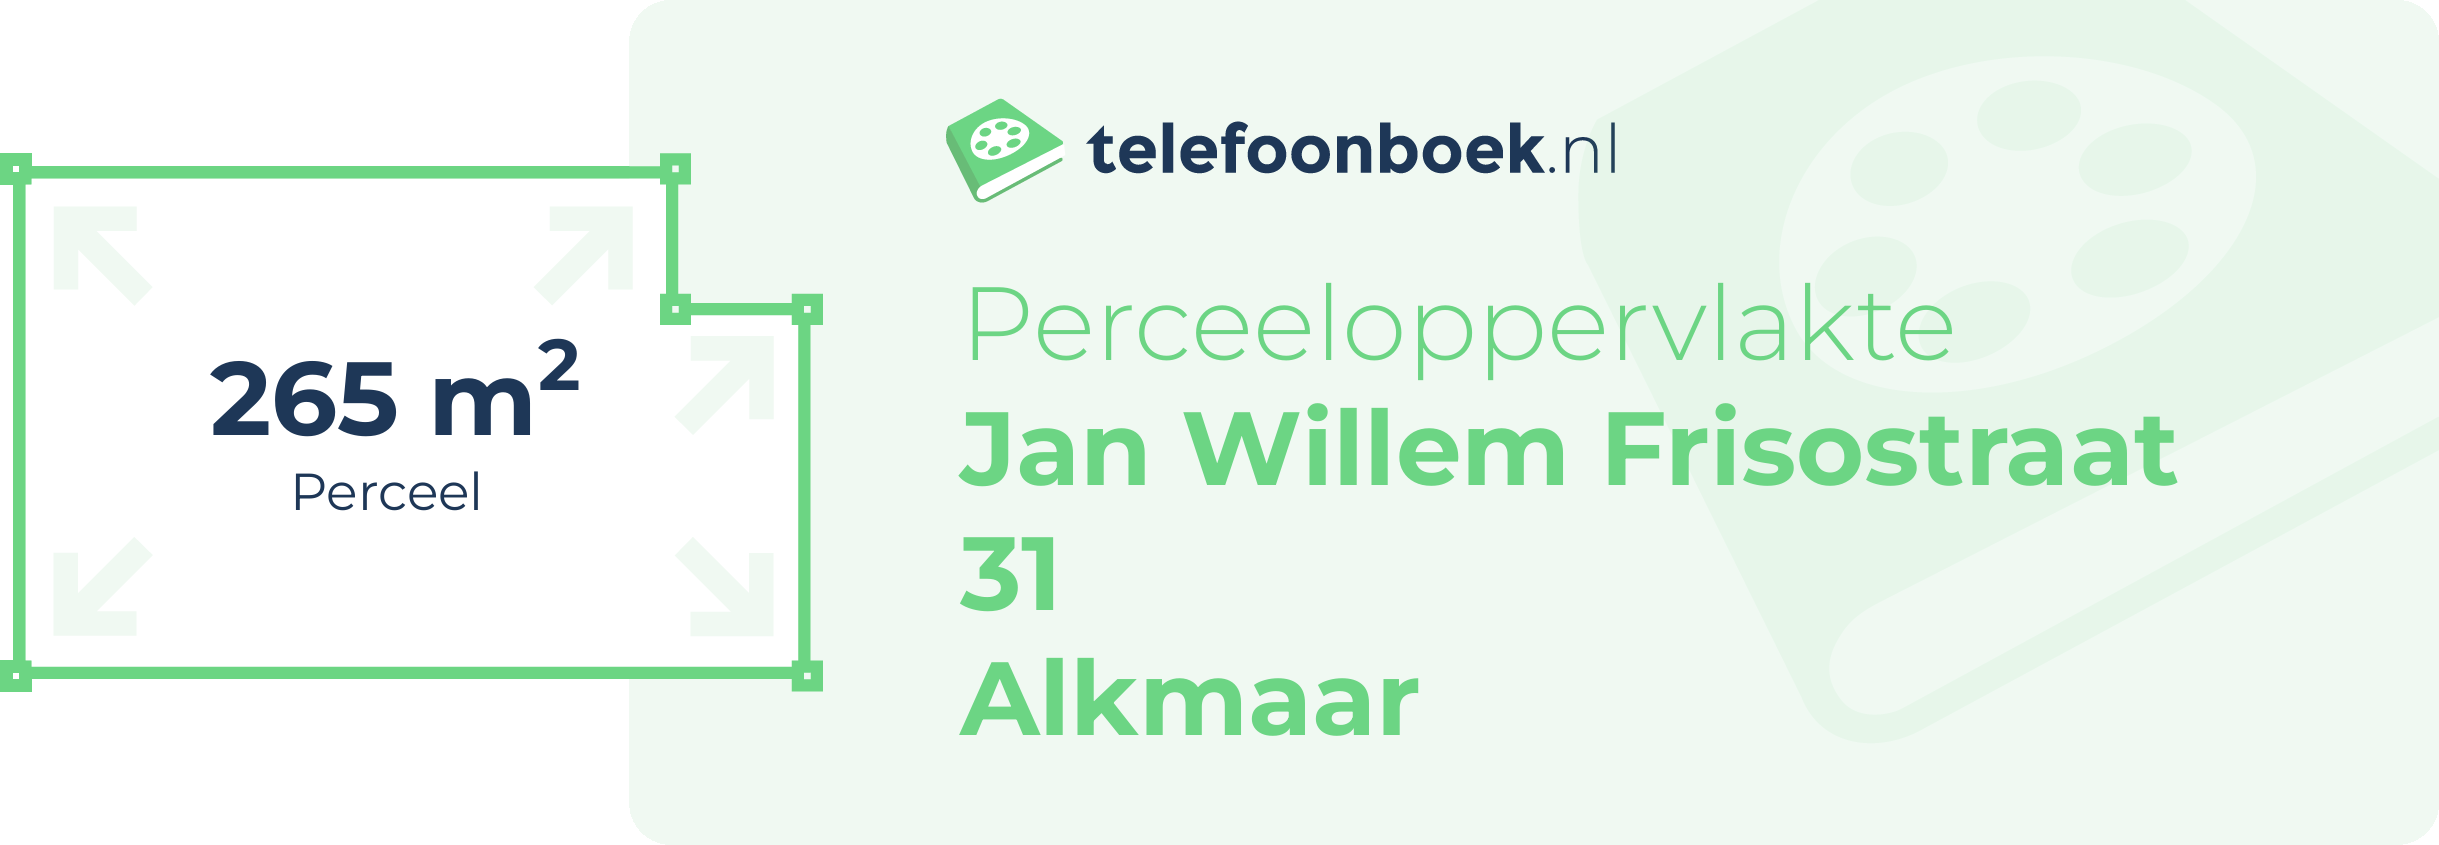 Perceeloppervlakte Jan Willem Frisostraat 31 Alkmaar